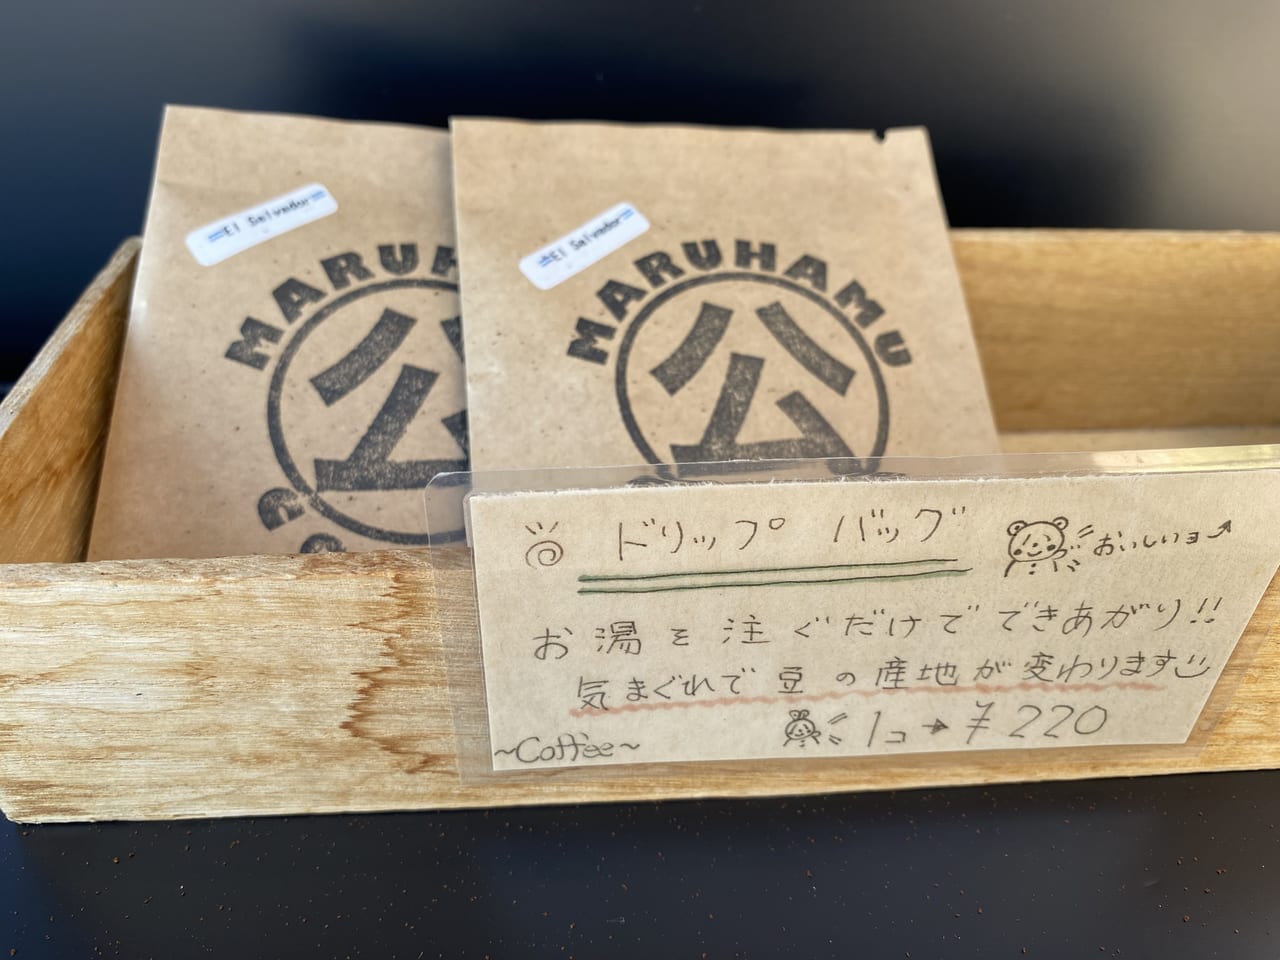 宮崎キッチンカー 店舗のない移動カフェ マルハムコーヒー6